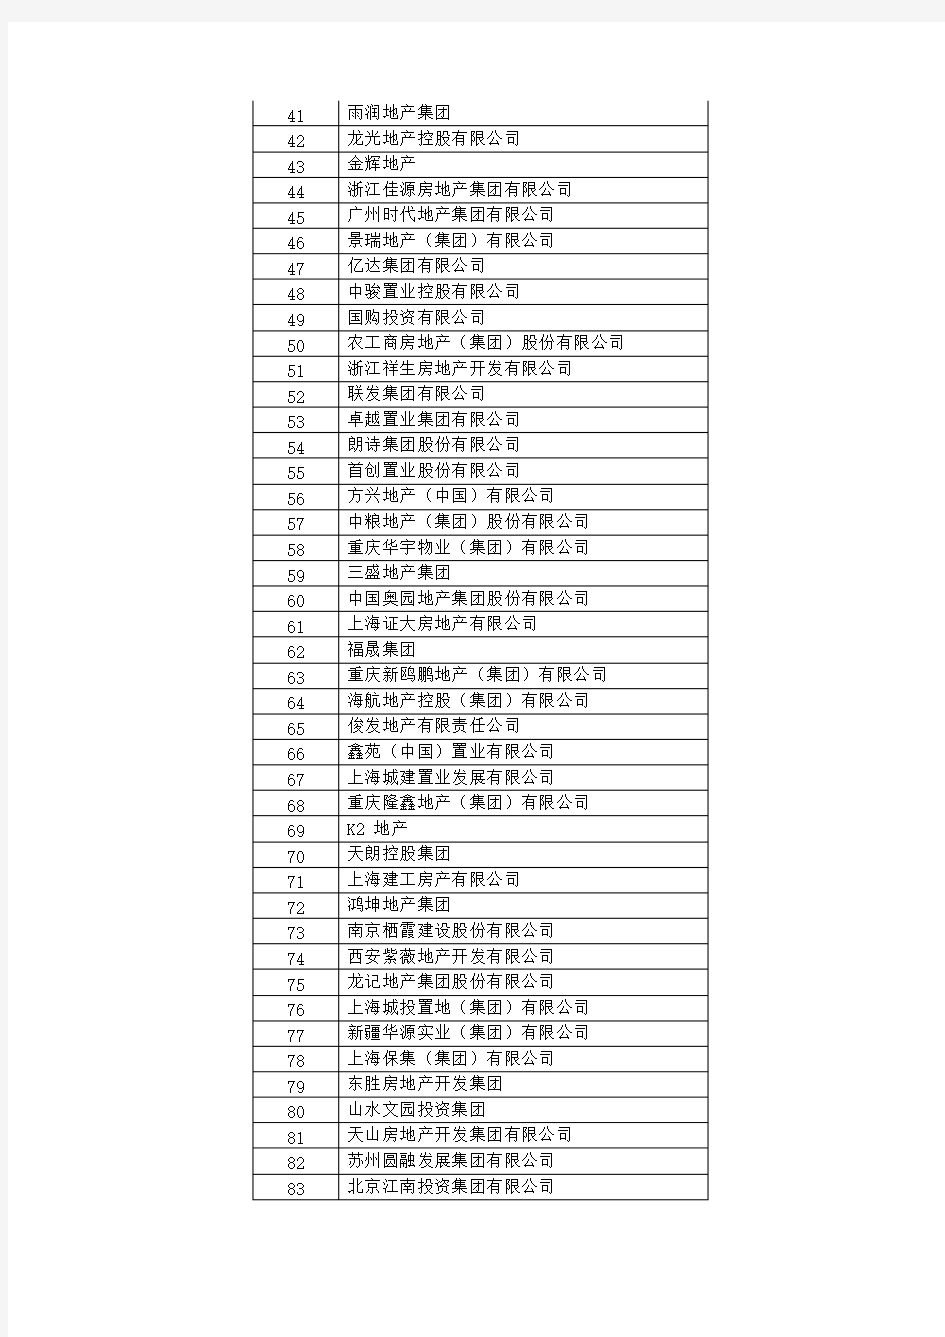 [VIP专享]2015年中国房地产500强企业榜单